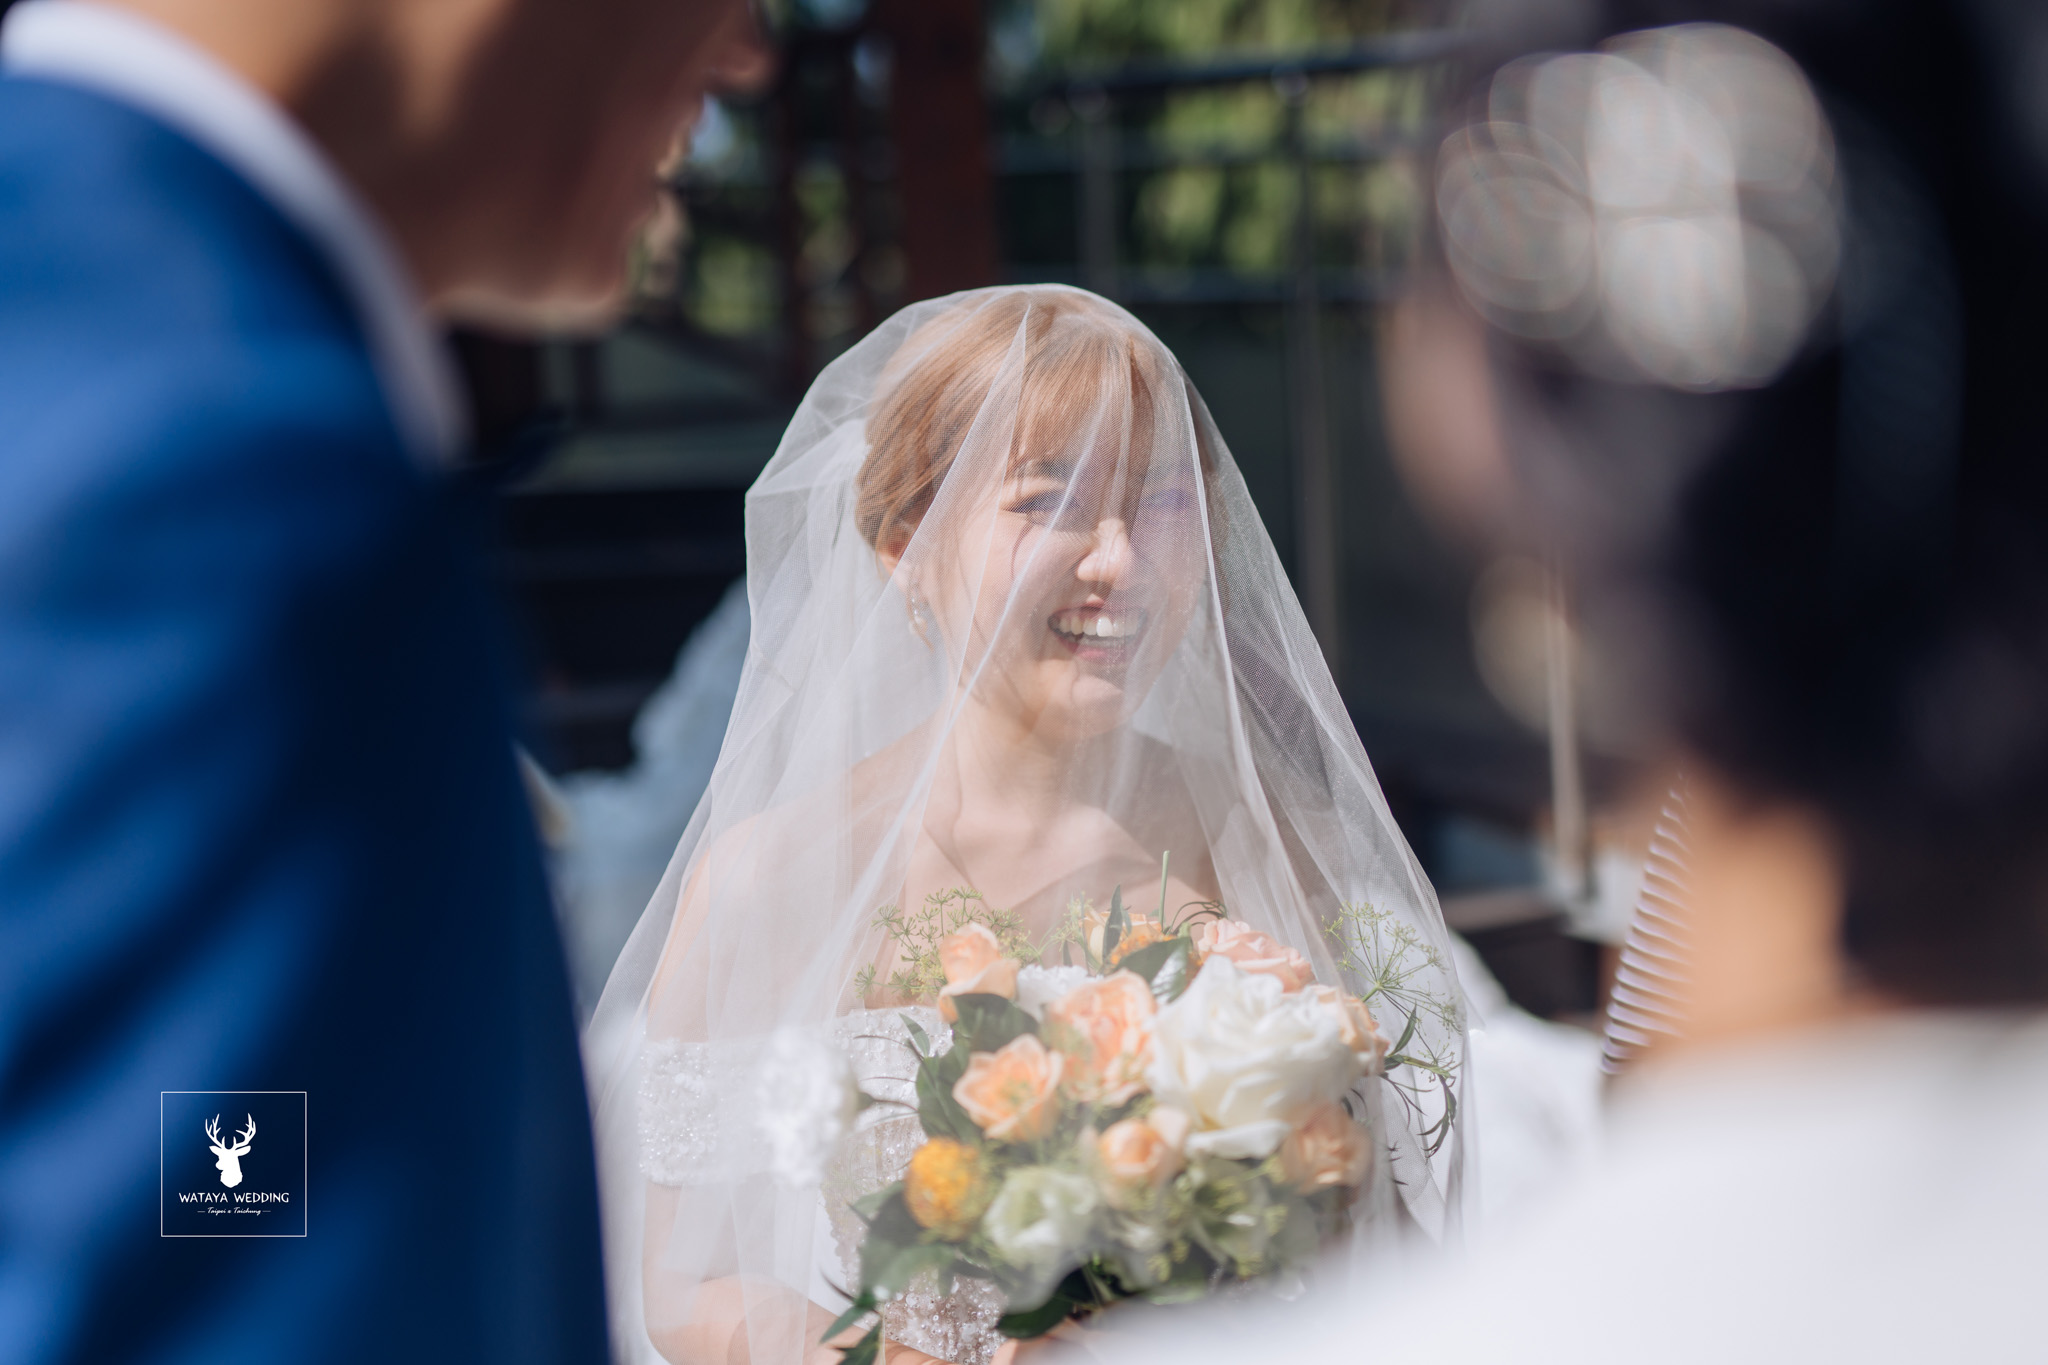 台中綿谷婚禮平面攝影 (27)